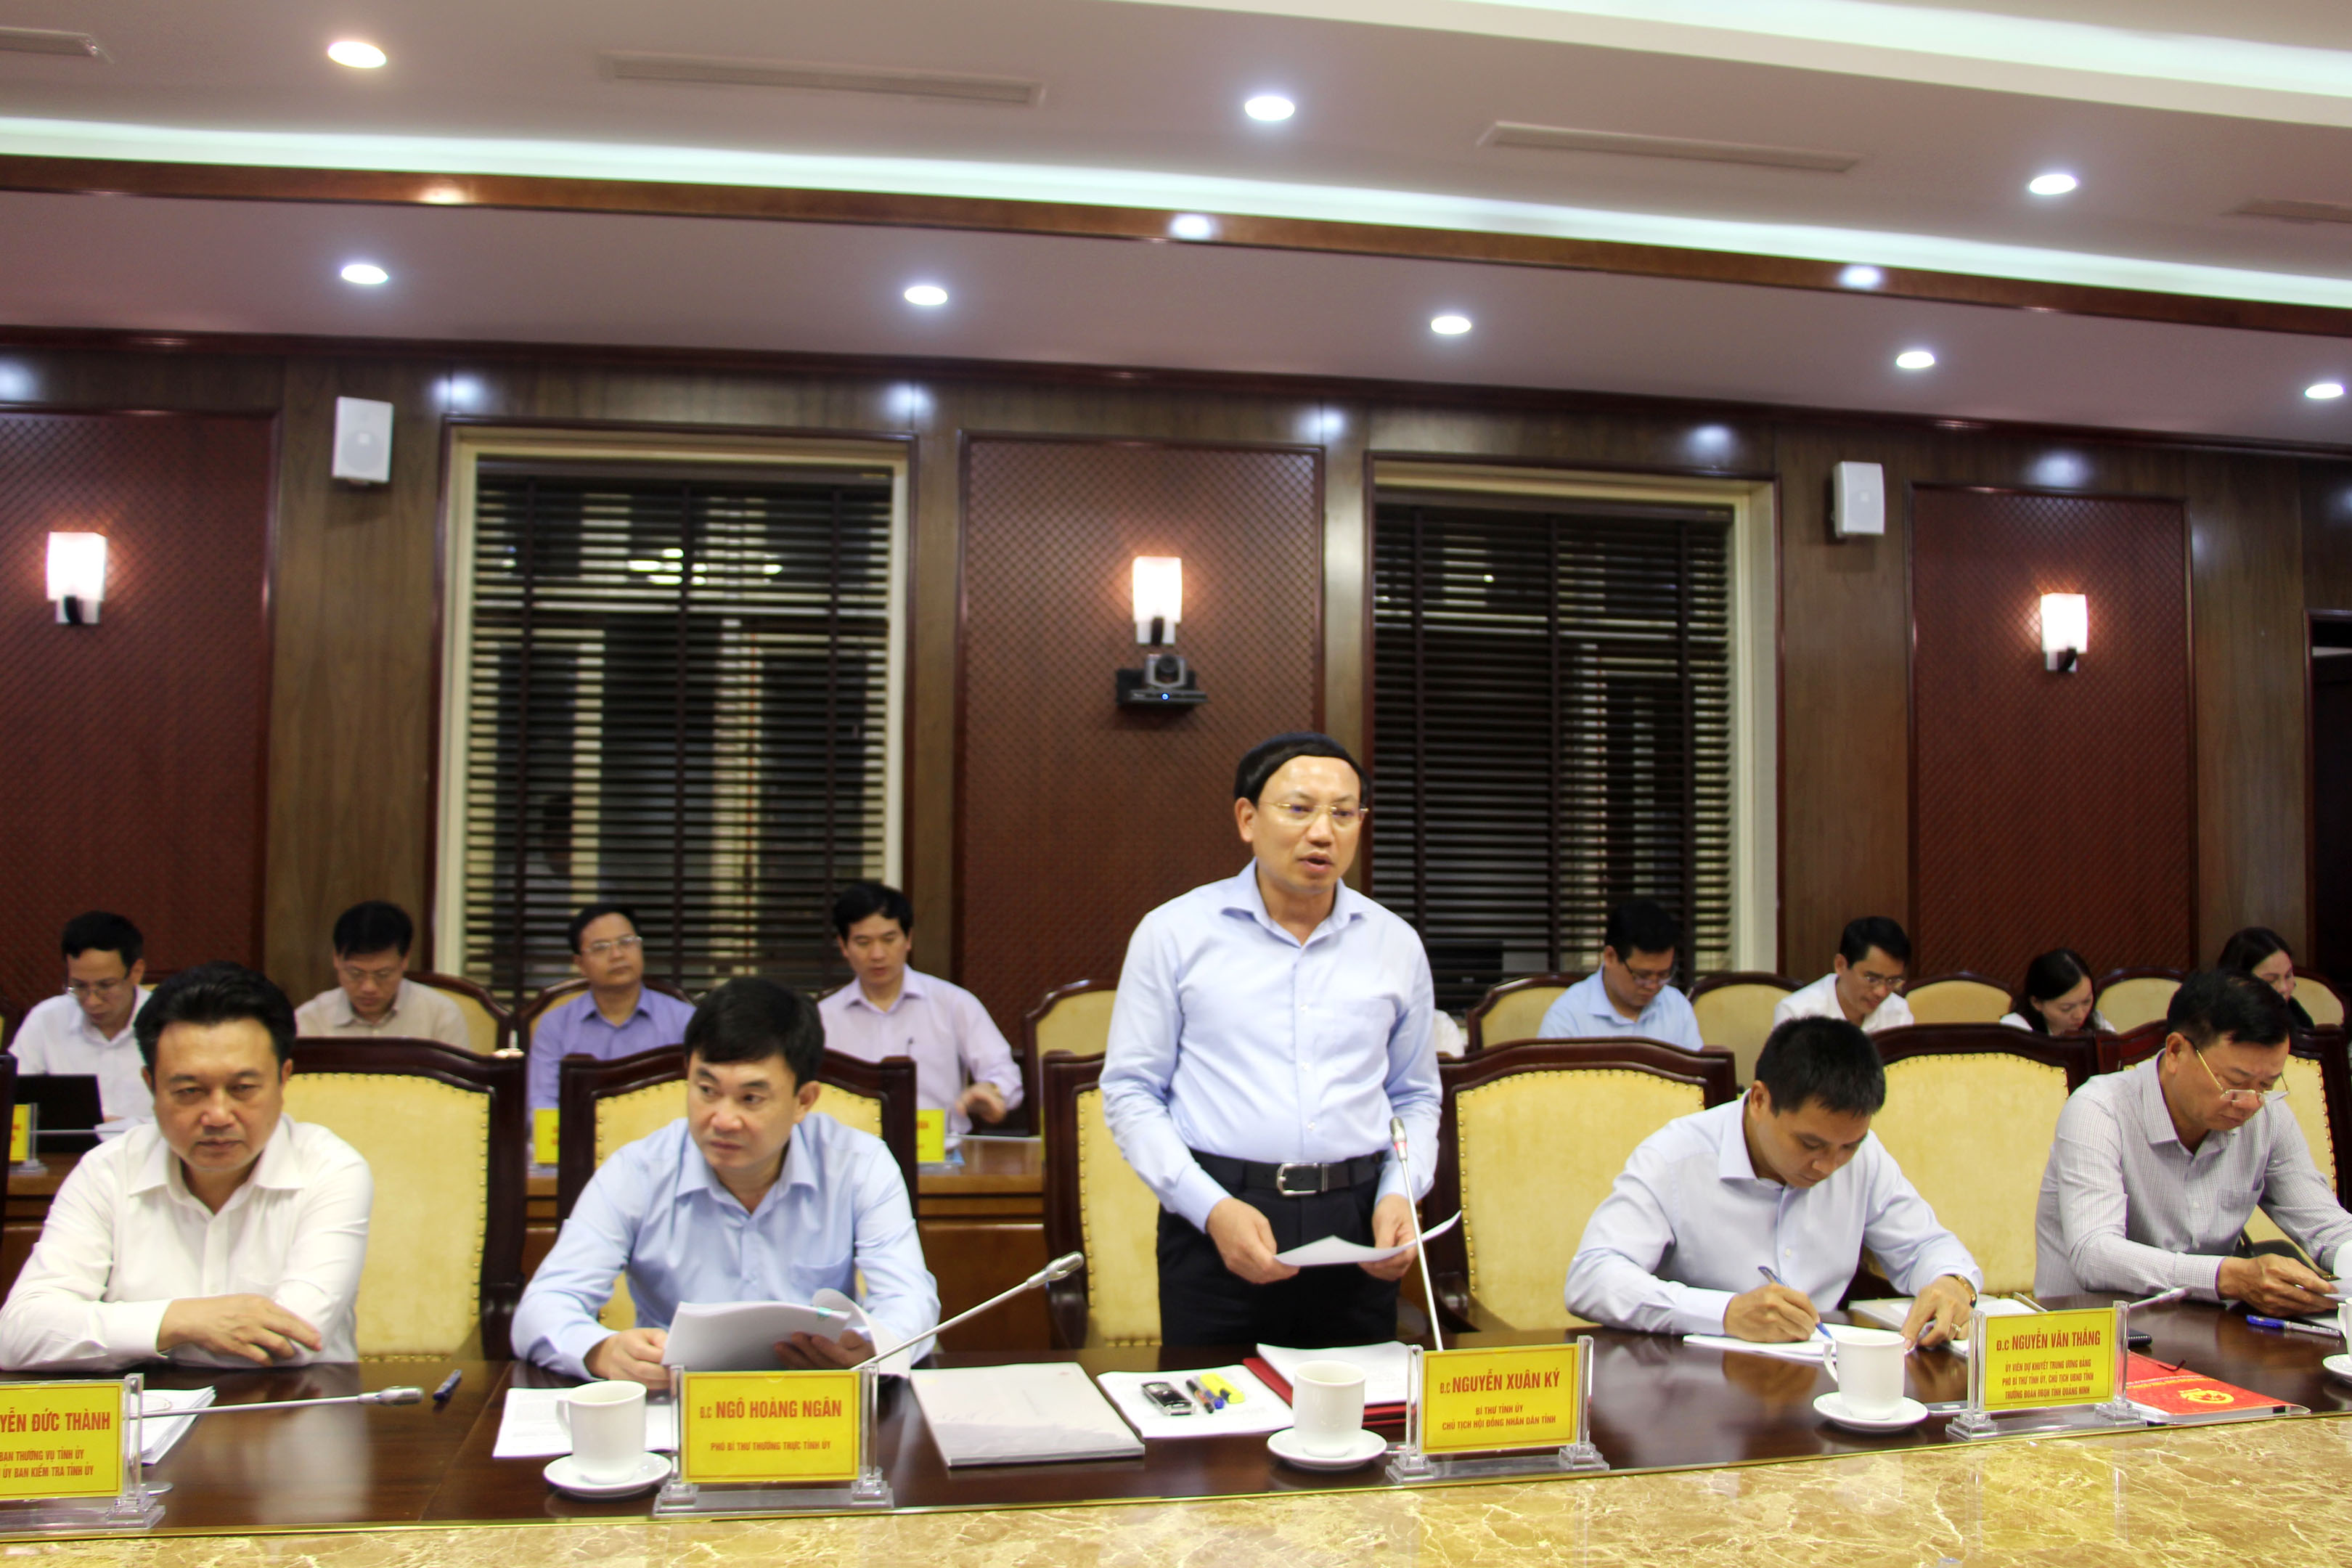 Đồng chí Nguyễn Xuân Ký, Bí thư Tỉnh ủy, Chủ tịch HĐND tỉnh, phát biểu tại buổi làm việc.